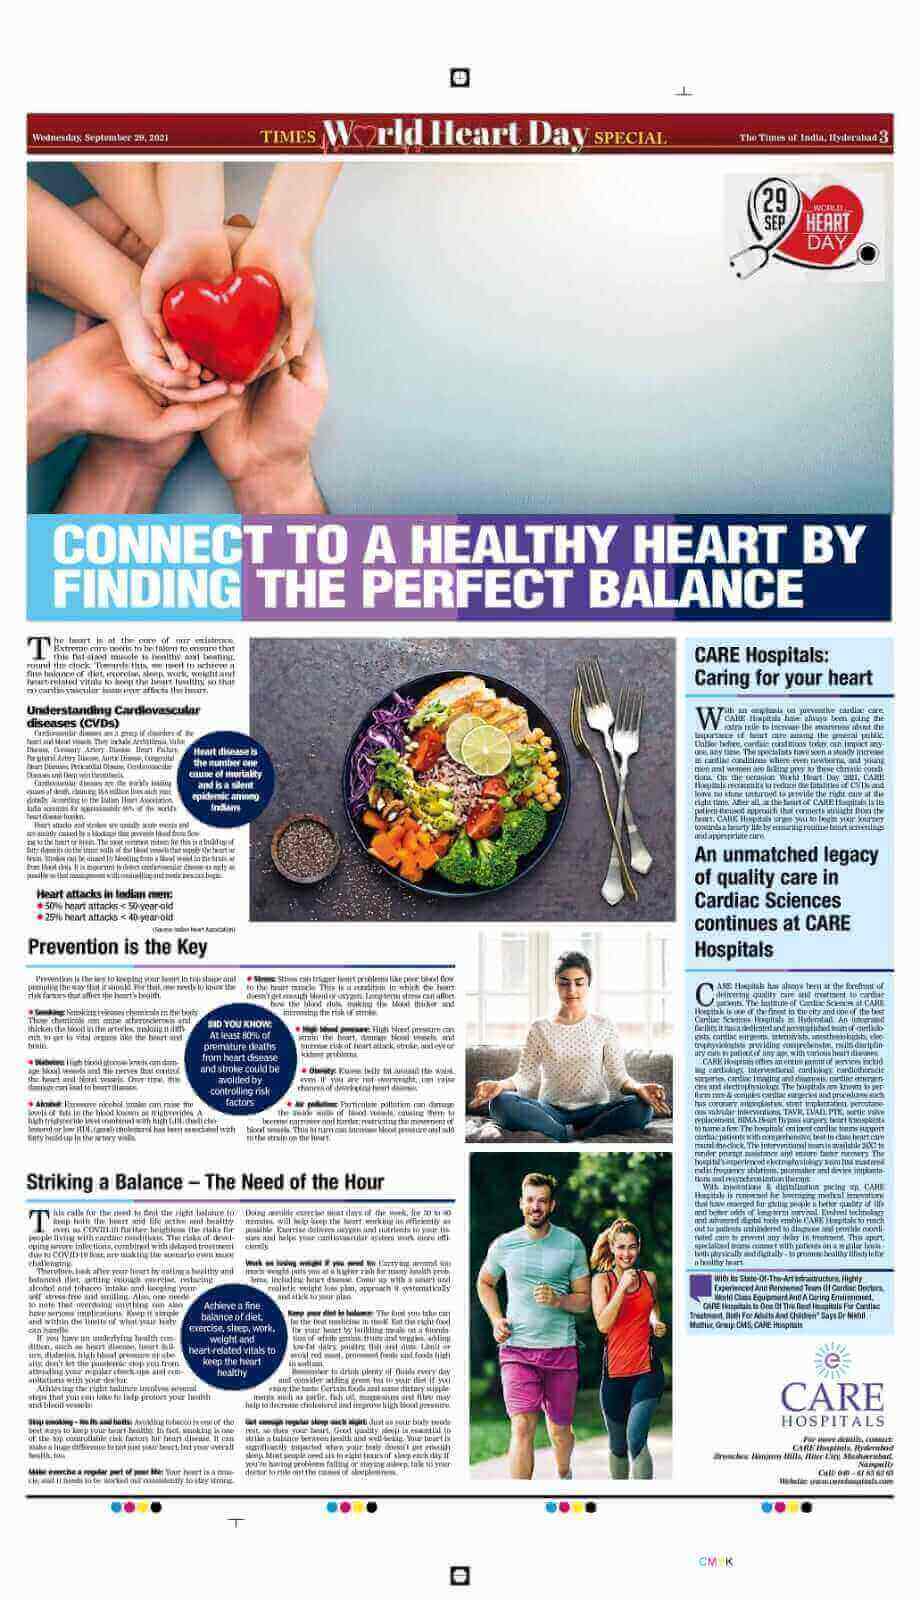 स्वस्थ हृदय से जुड़ें। टाइम्स ऑफ इंडिया द्वारा विश्व हृदय दिवस 2021 के अवसर पर लेख